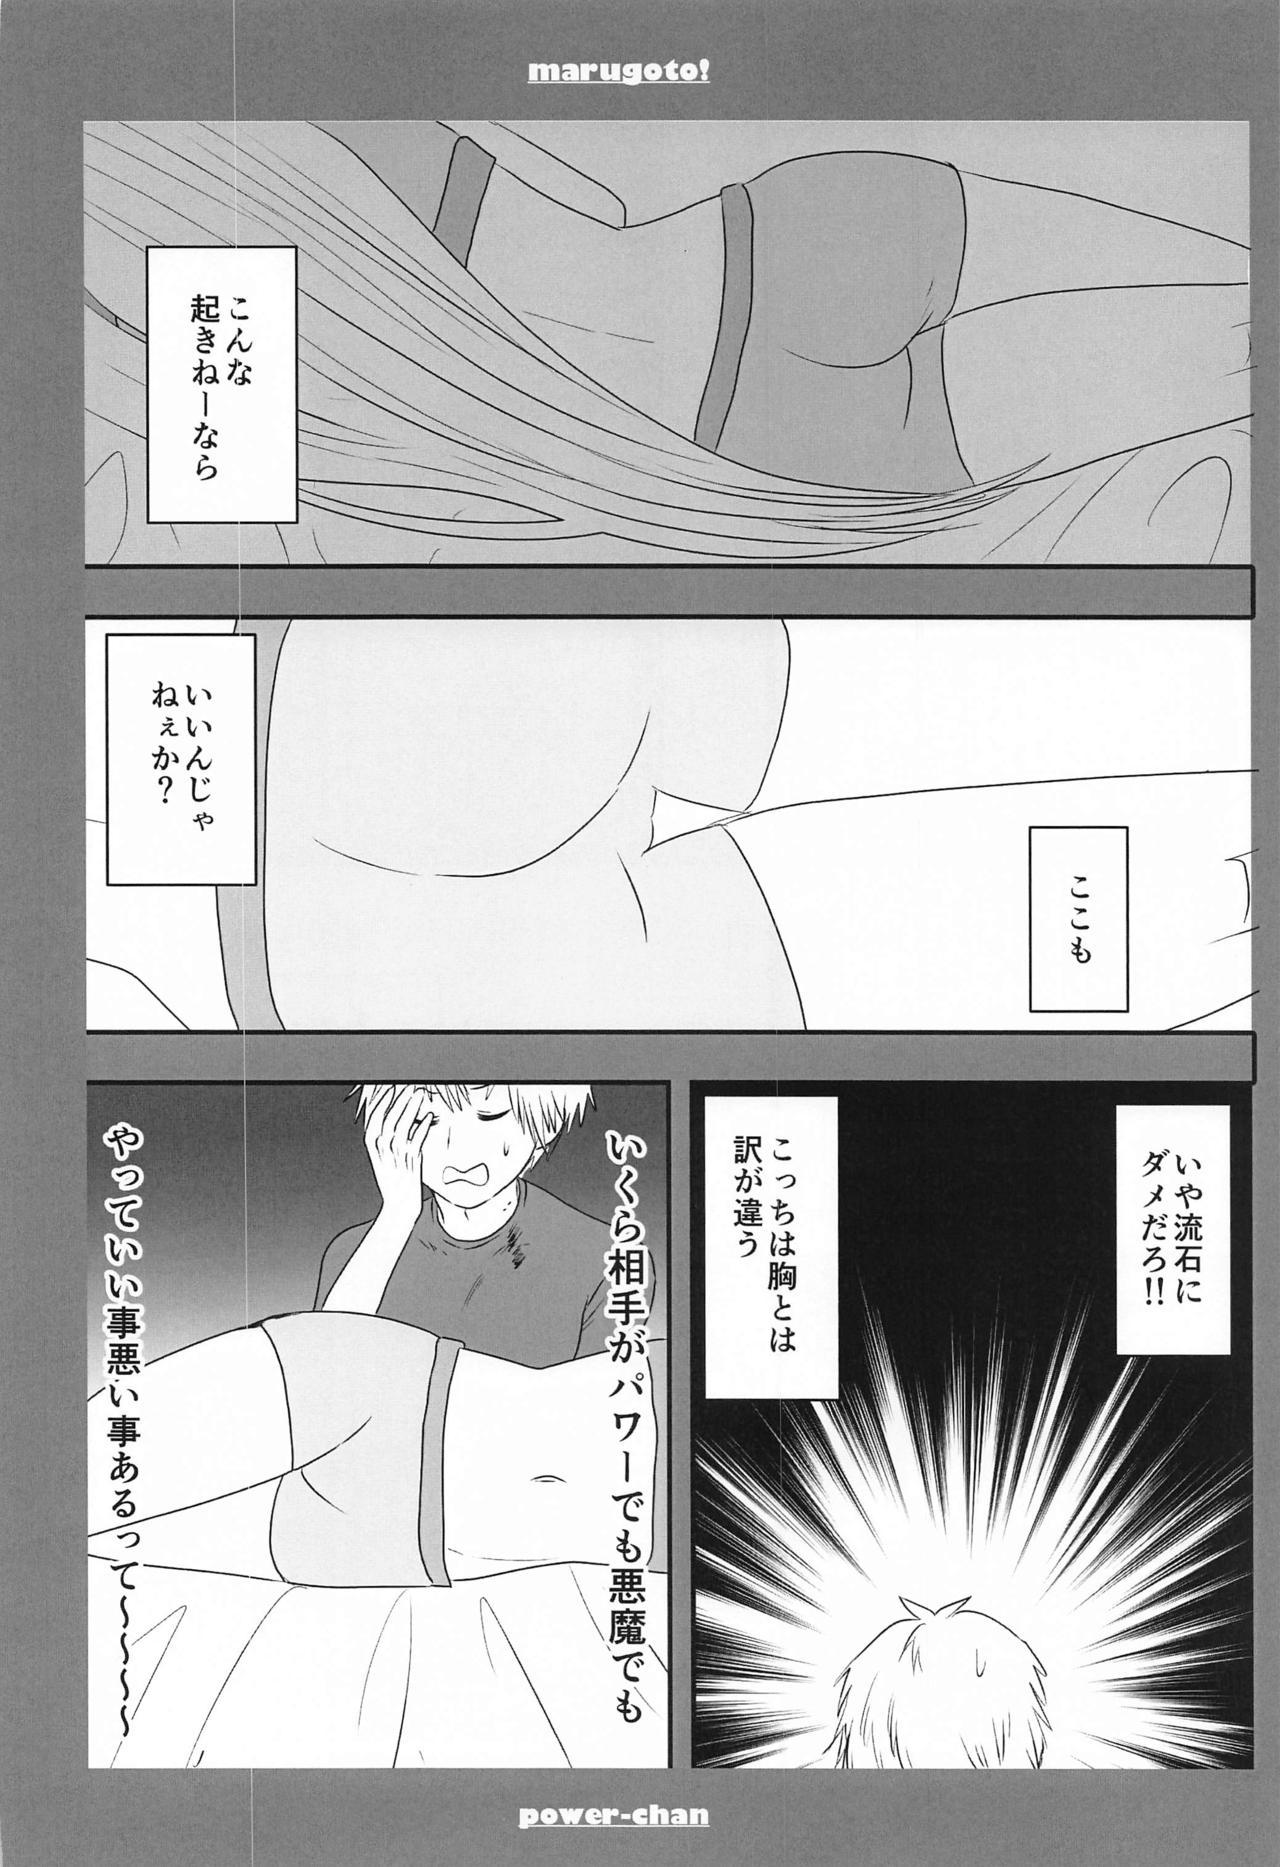 Licking marugotoissatsudenji×pawa - Chainsaw man Dorm - Page 11